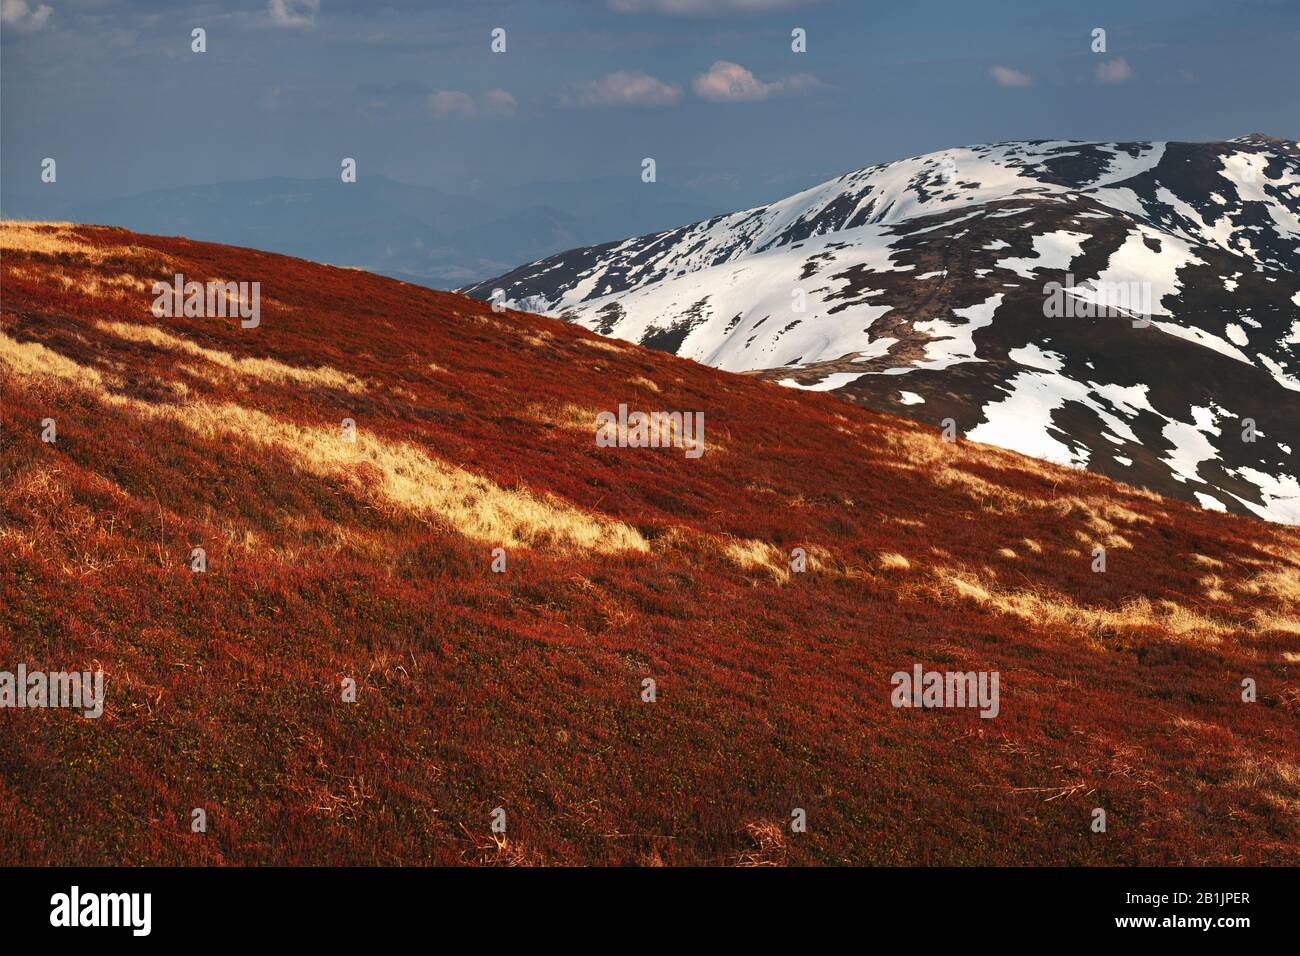 Vista sulle colline primaverili con erba arancione e montagne innevate sullo sfondo. Fotografia di paesaggio Foto Stock